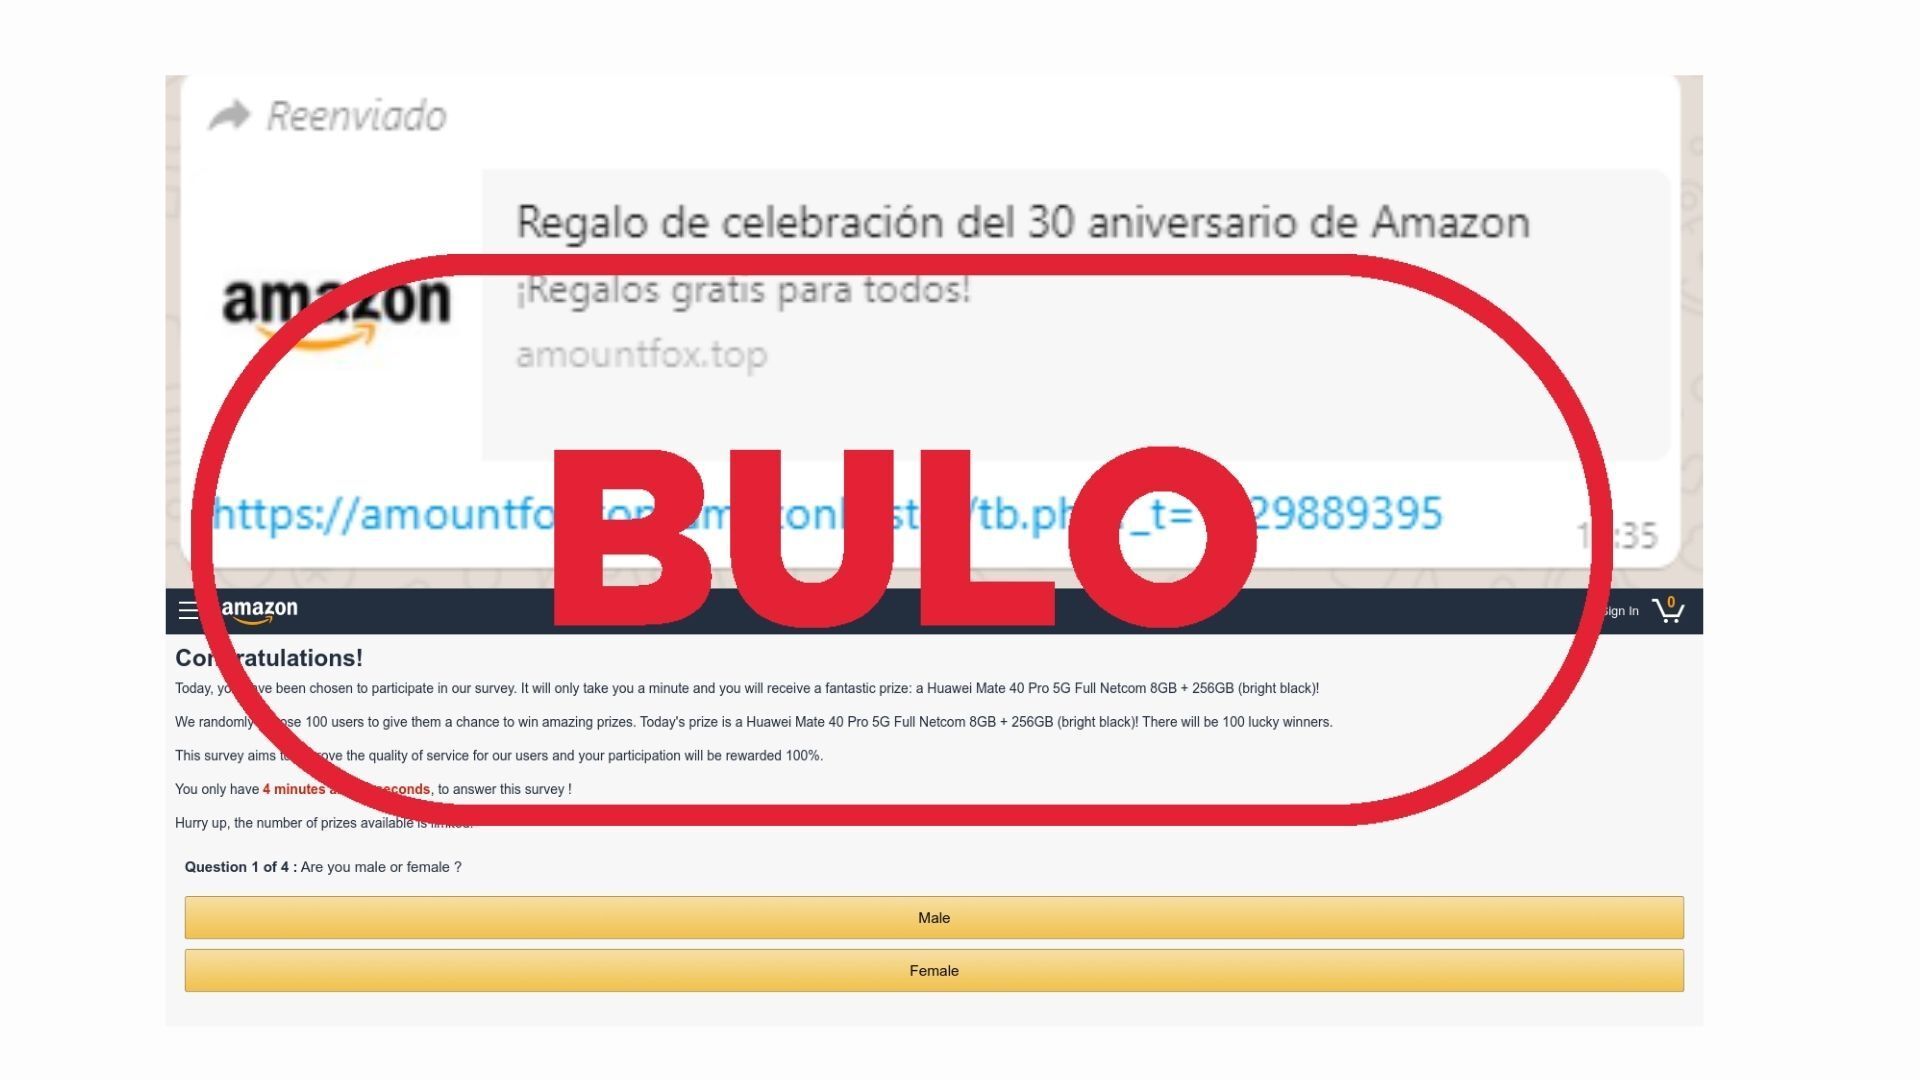 himno Nacional llevar a cabo Incierto Amazon no te regala nada por su 30 aniversario, es un fraude